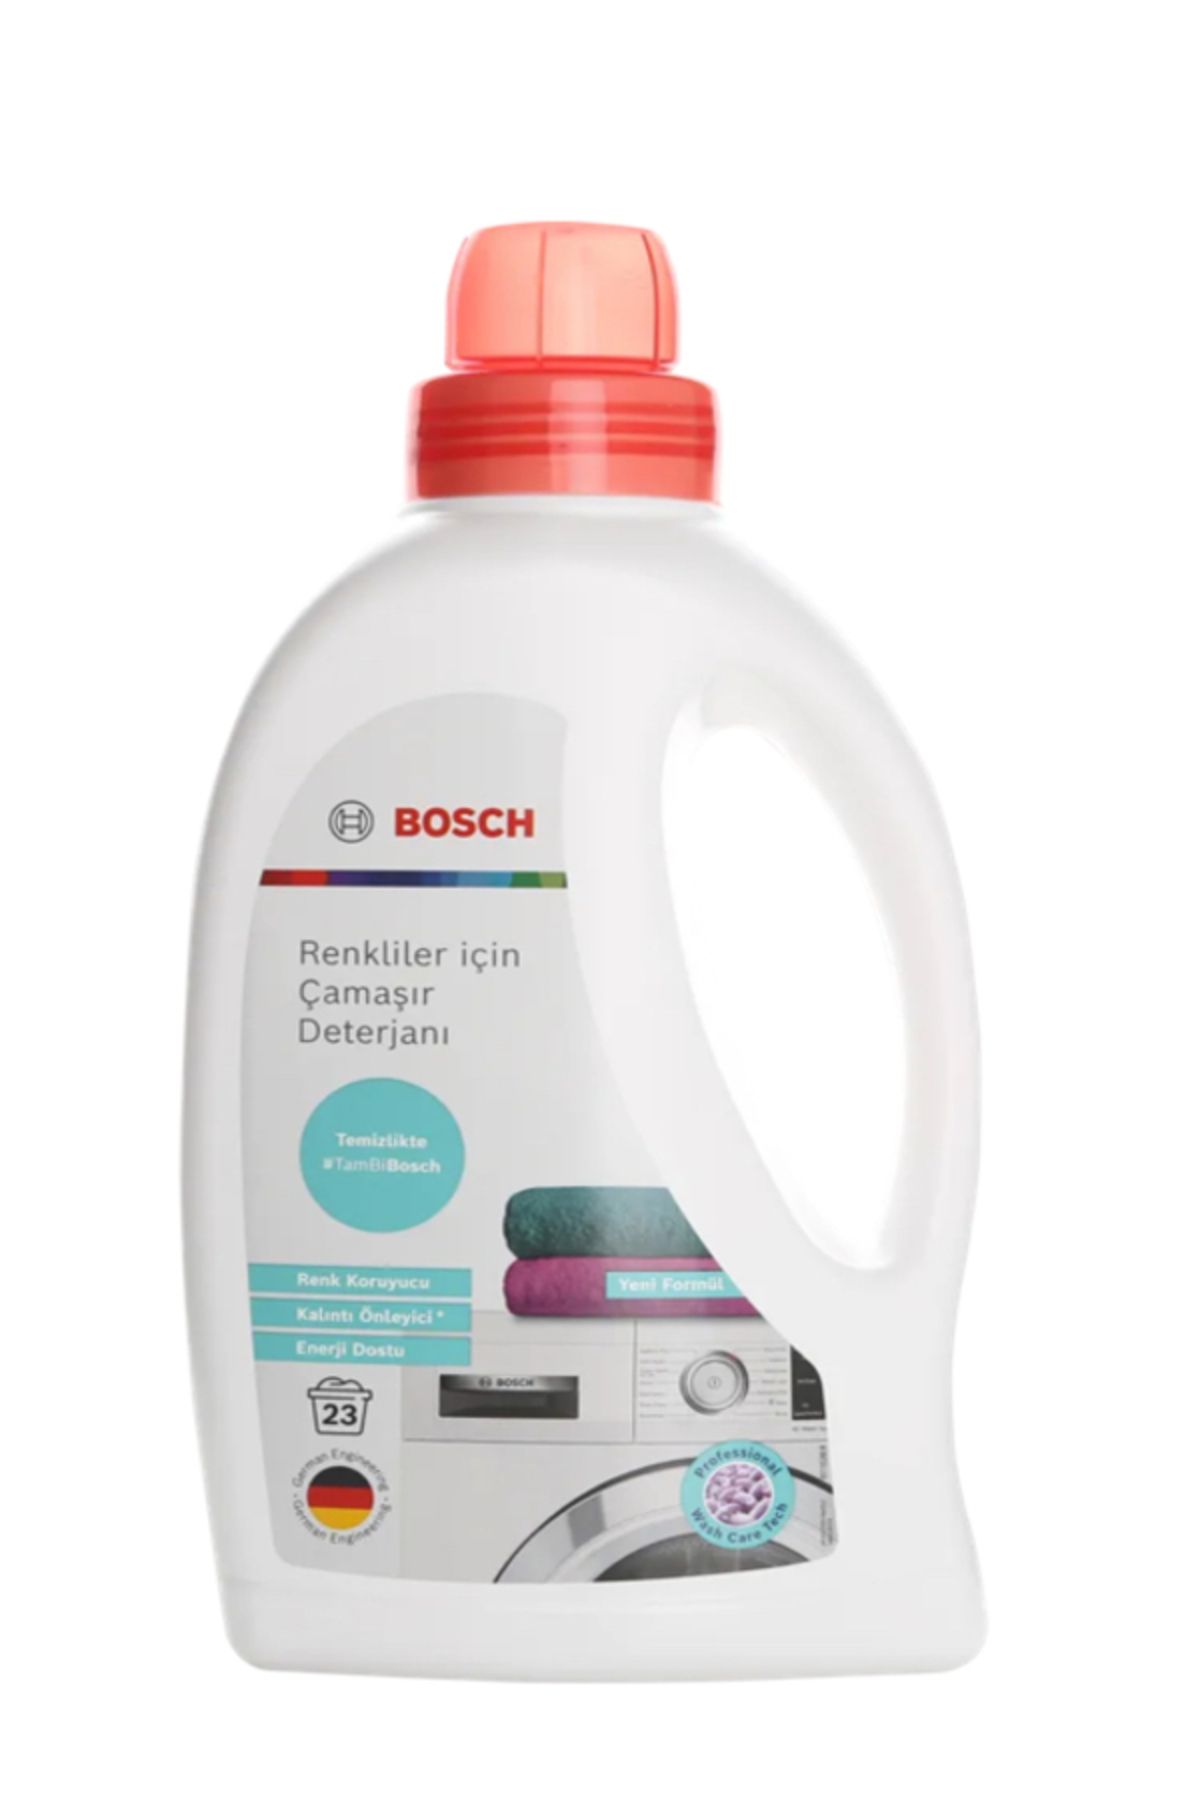 Bosch Renkliler için Çamaşır Deterjanı 312325 - 4’lü